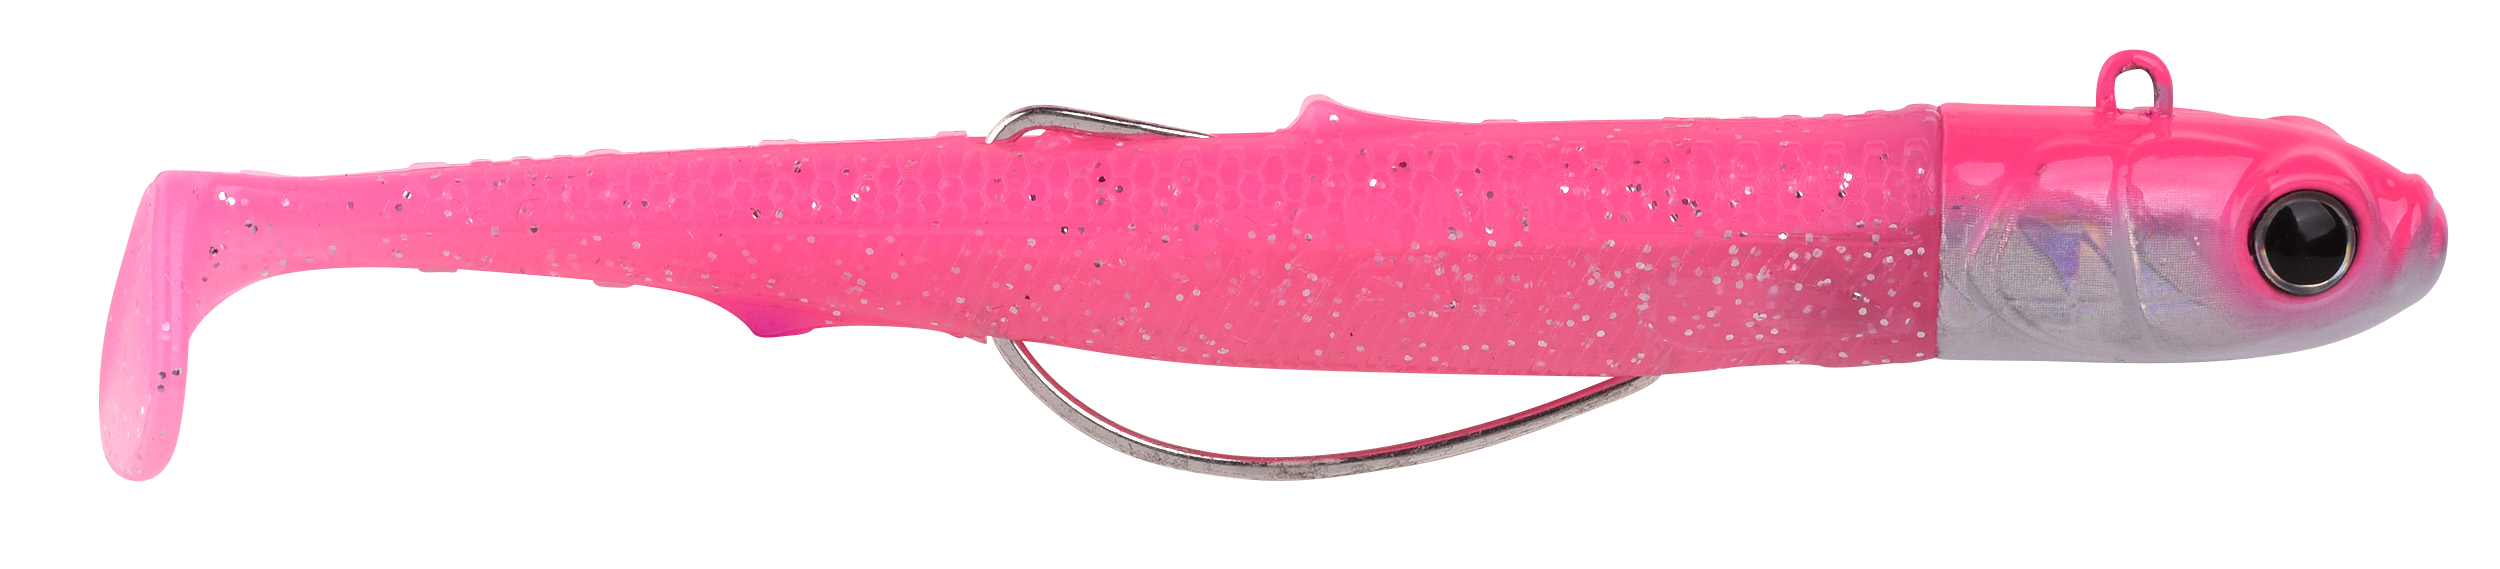 Spro Gutsbait Salt Zeevis Softbait 8cm (15g) - Pink Minnow